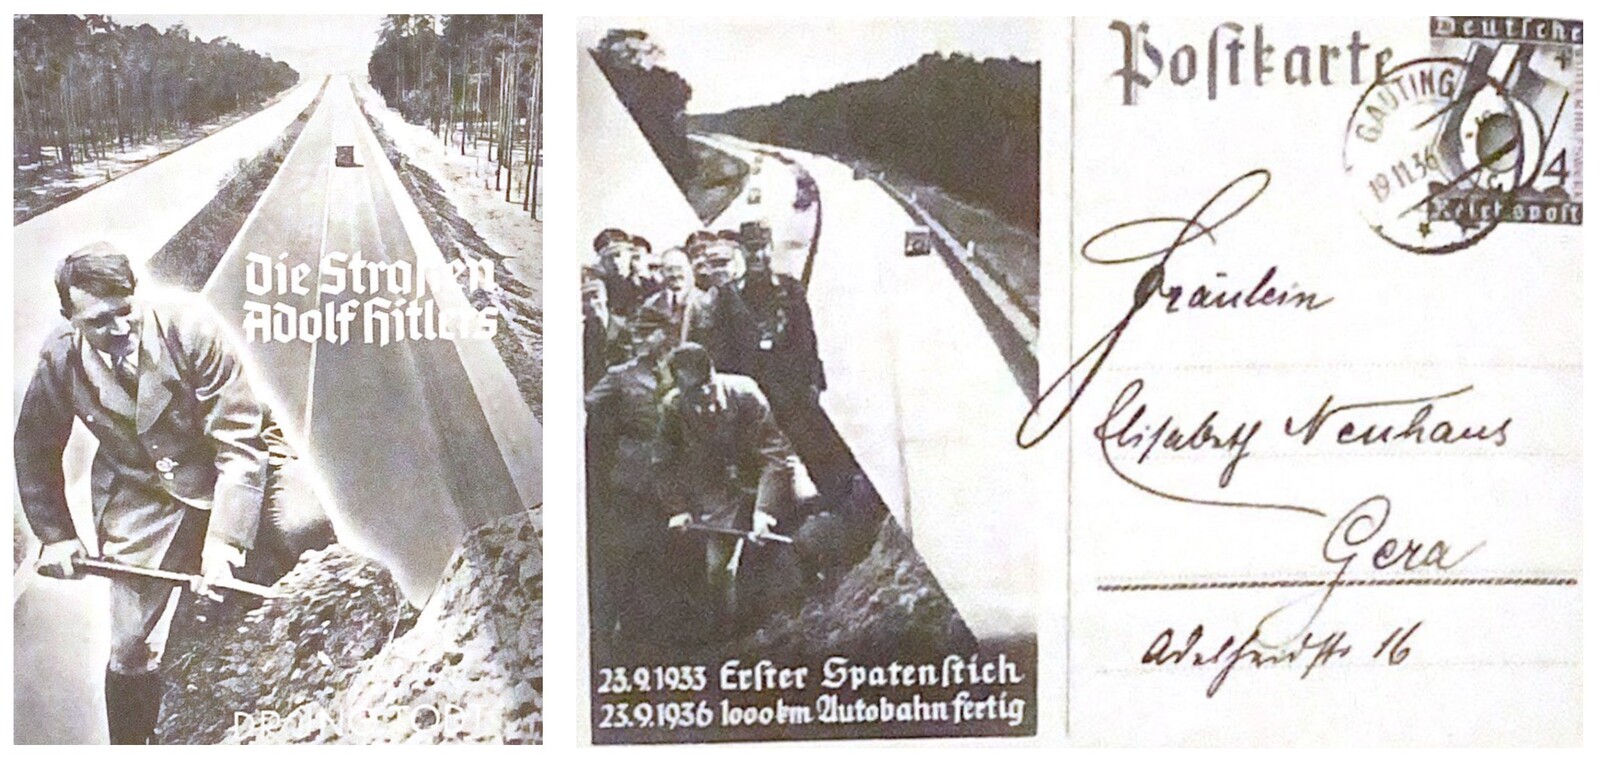 Broschüre und Postkarte zum Autobahnbau unter den Nationalsozialisten